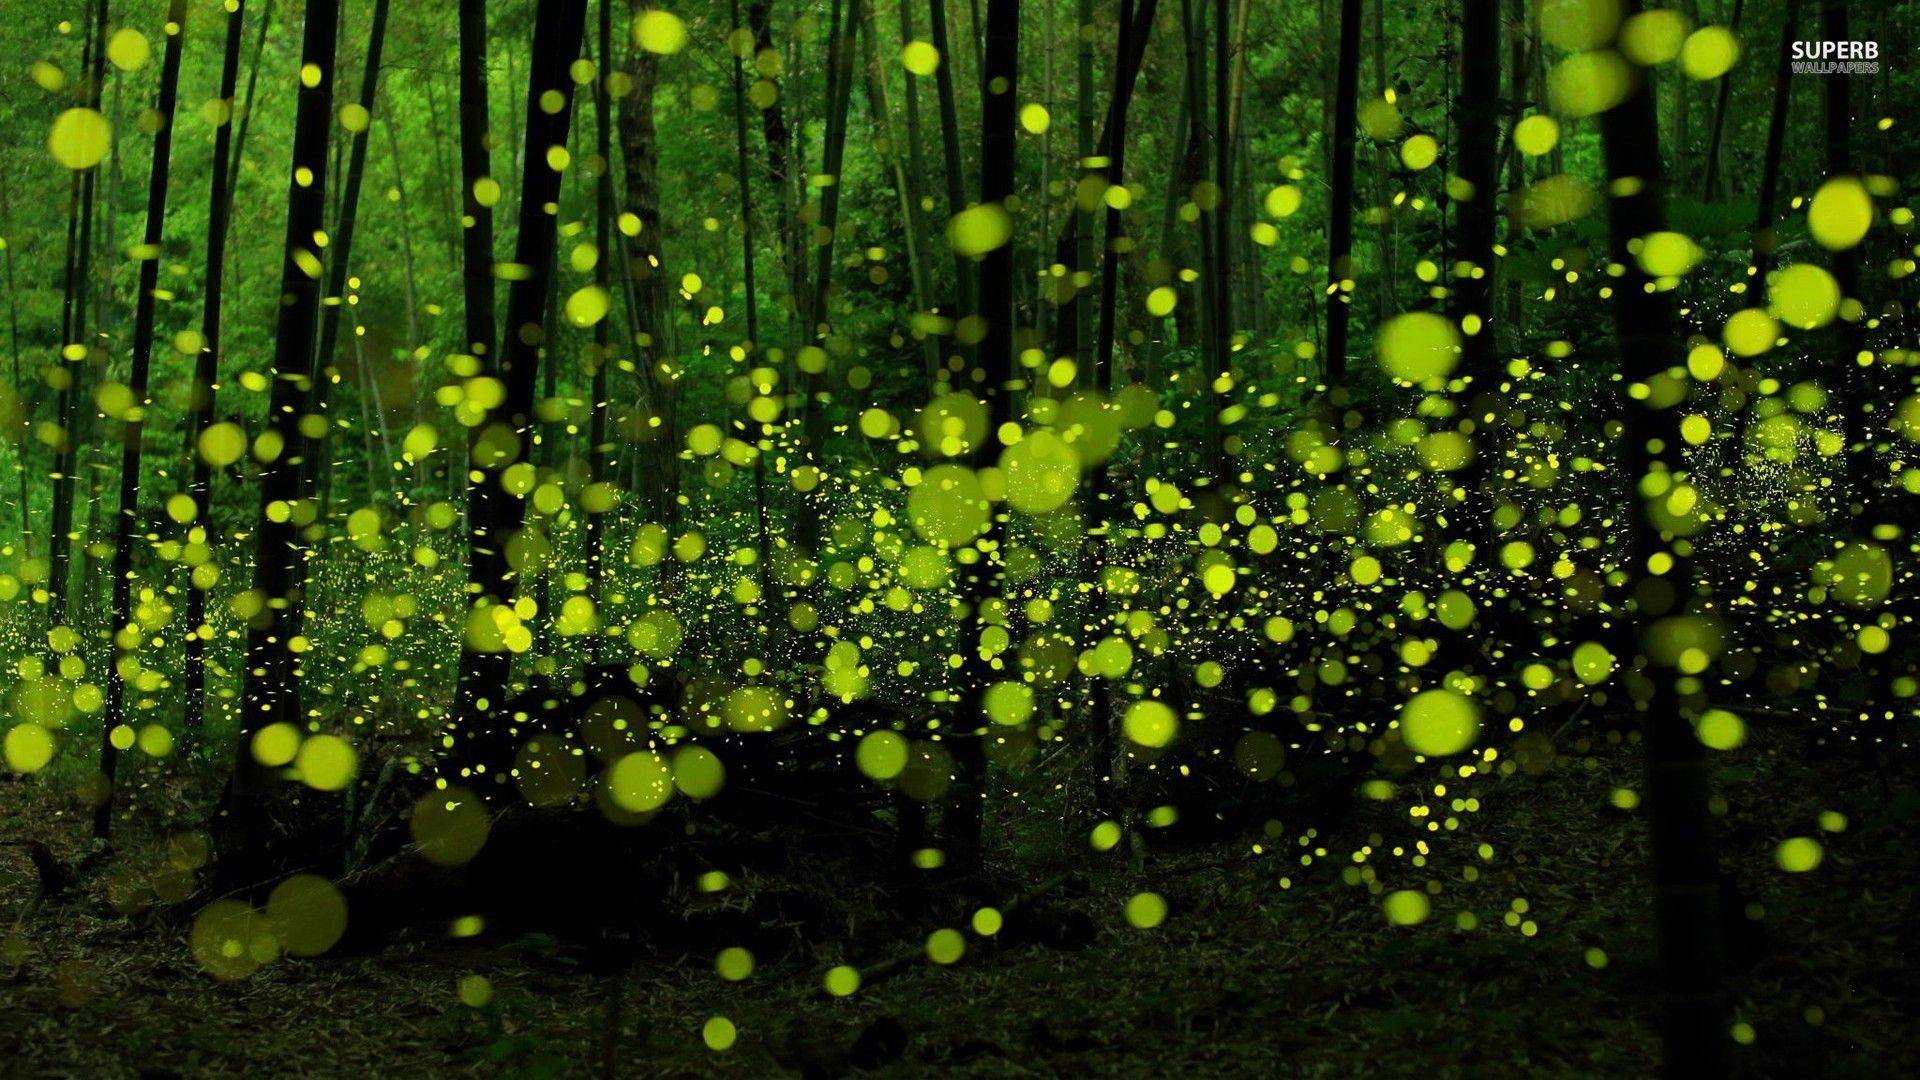 Green Fireflies In The Forest Wallpaper Digital Art